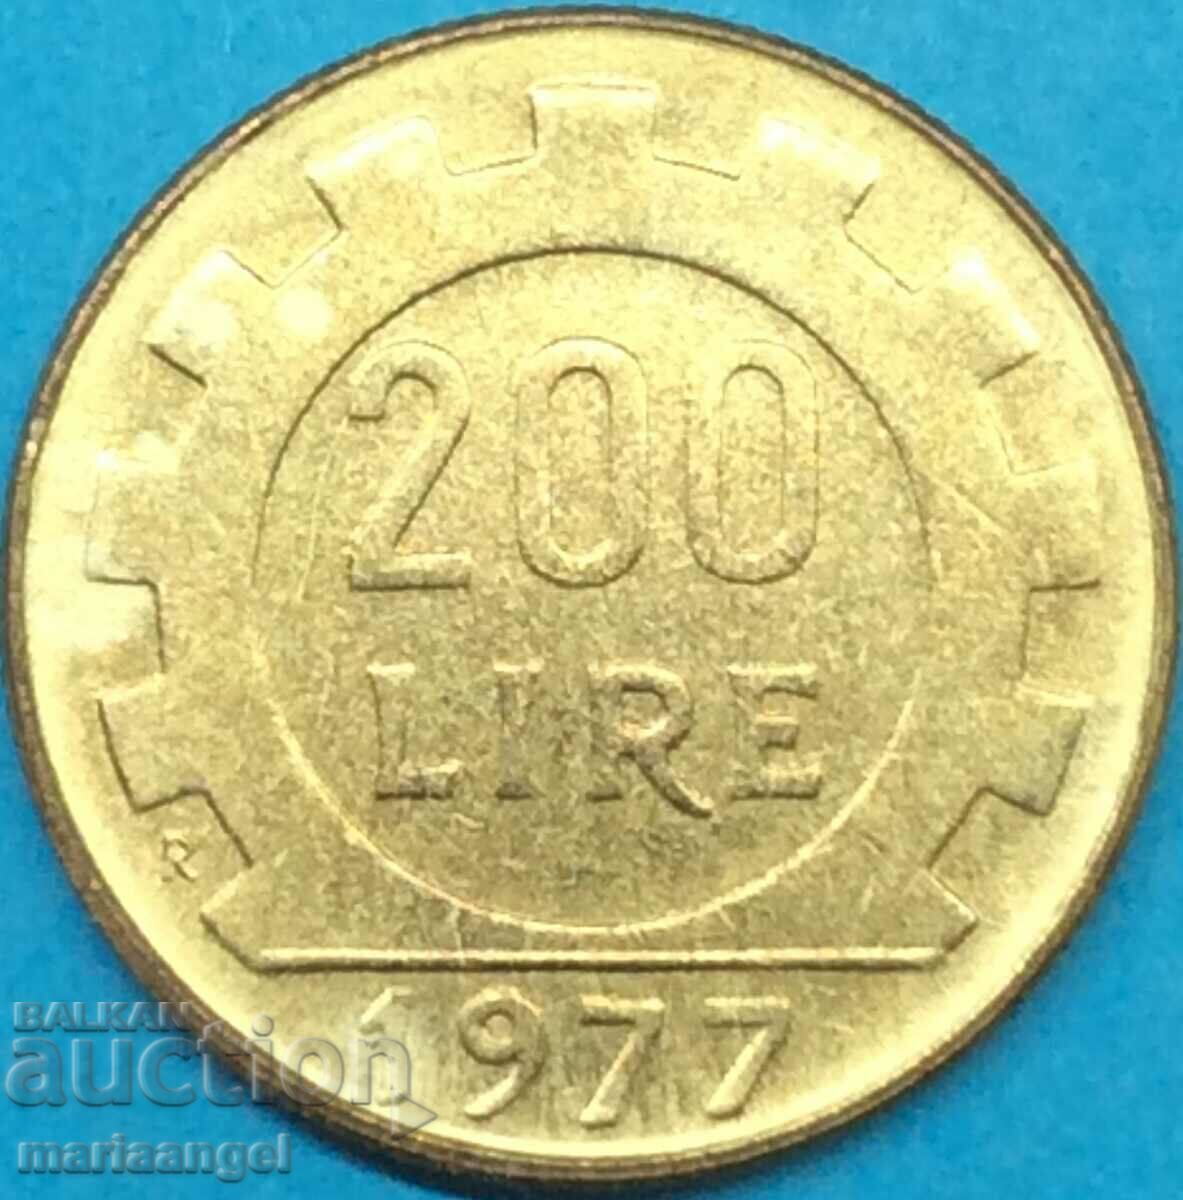 200 λιρέτες 1977 Ιταλία